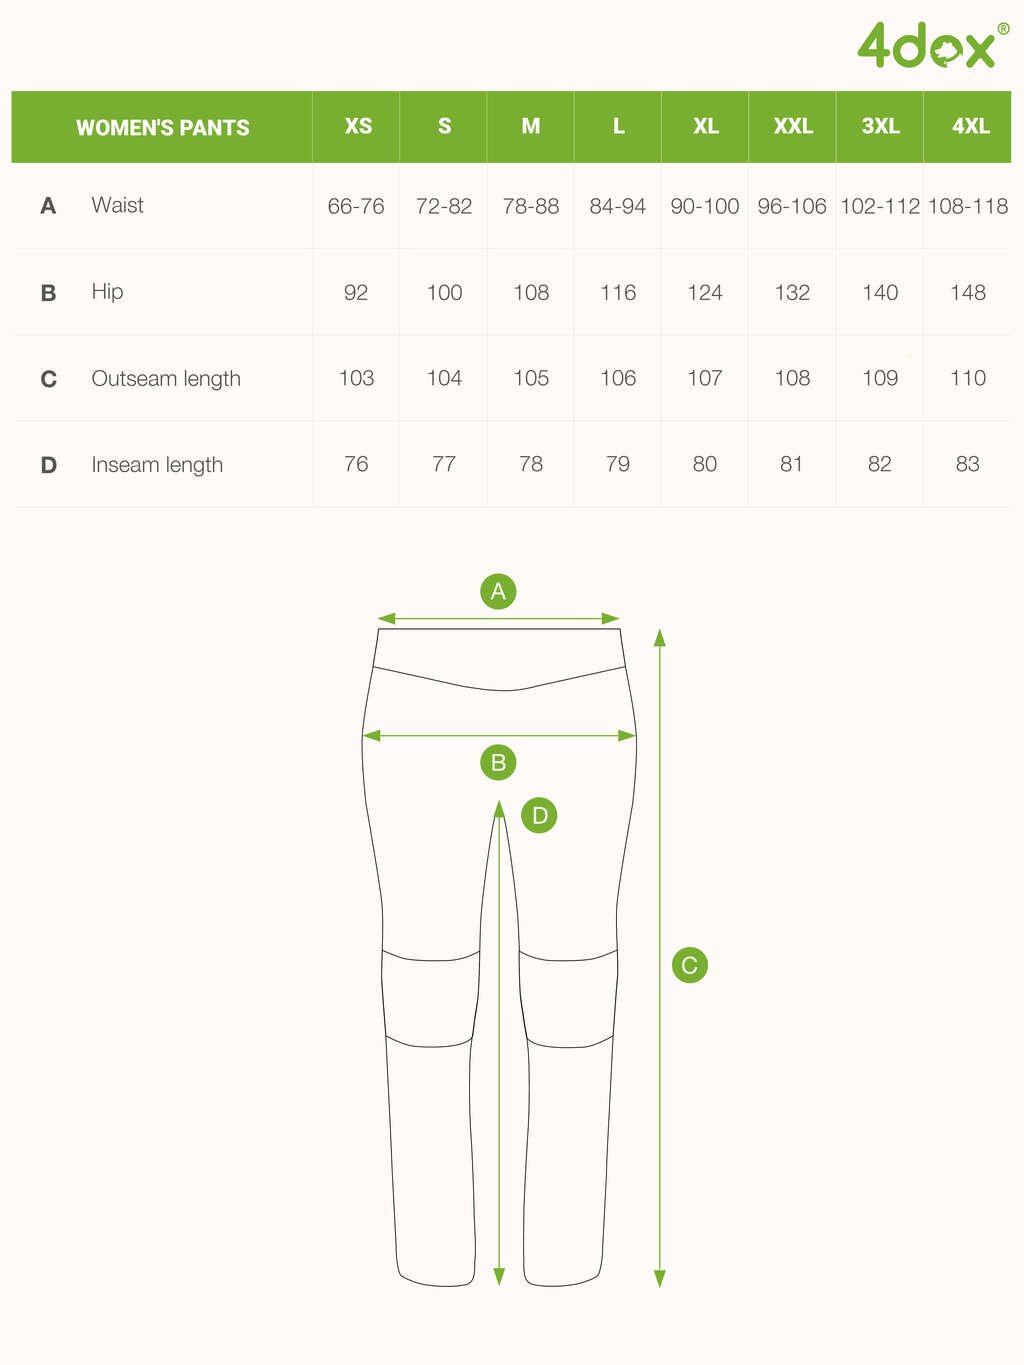 Women's training trousers WINTER garnet 4dox